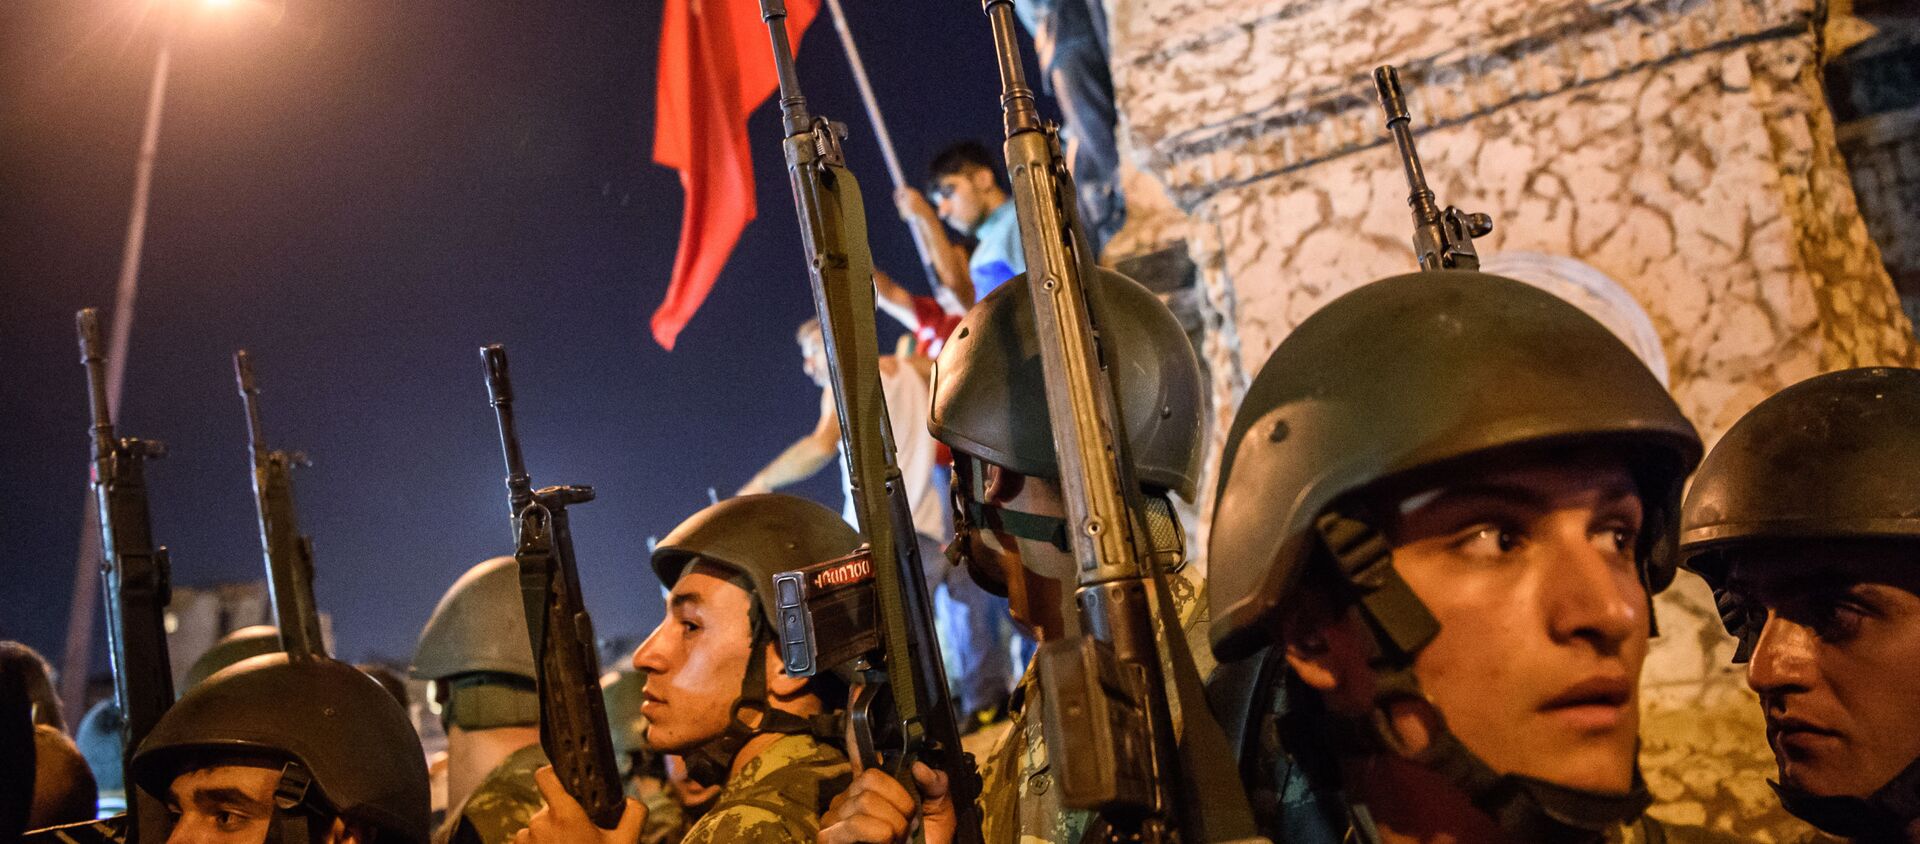 Турецкие солдаты остаются на площади Таксим, когда люди протестуют против военного переворота в Стамбуле  - Sputnik Абхазия, 1920, 15.07.2021